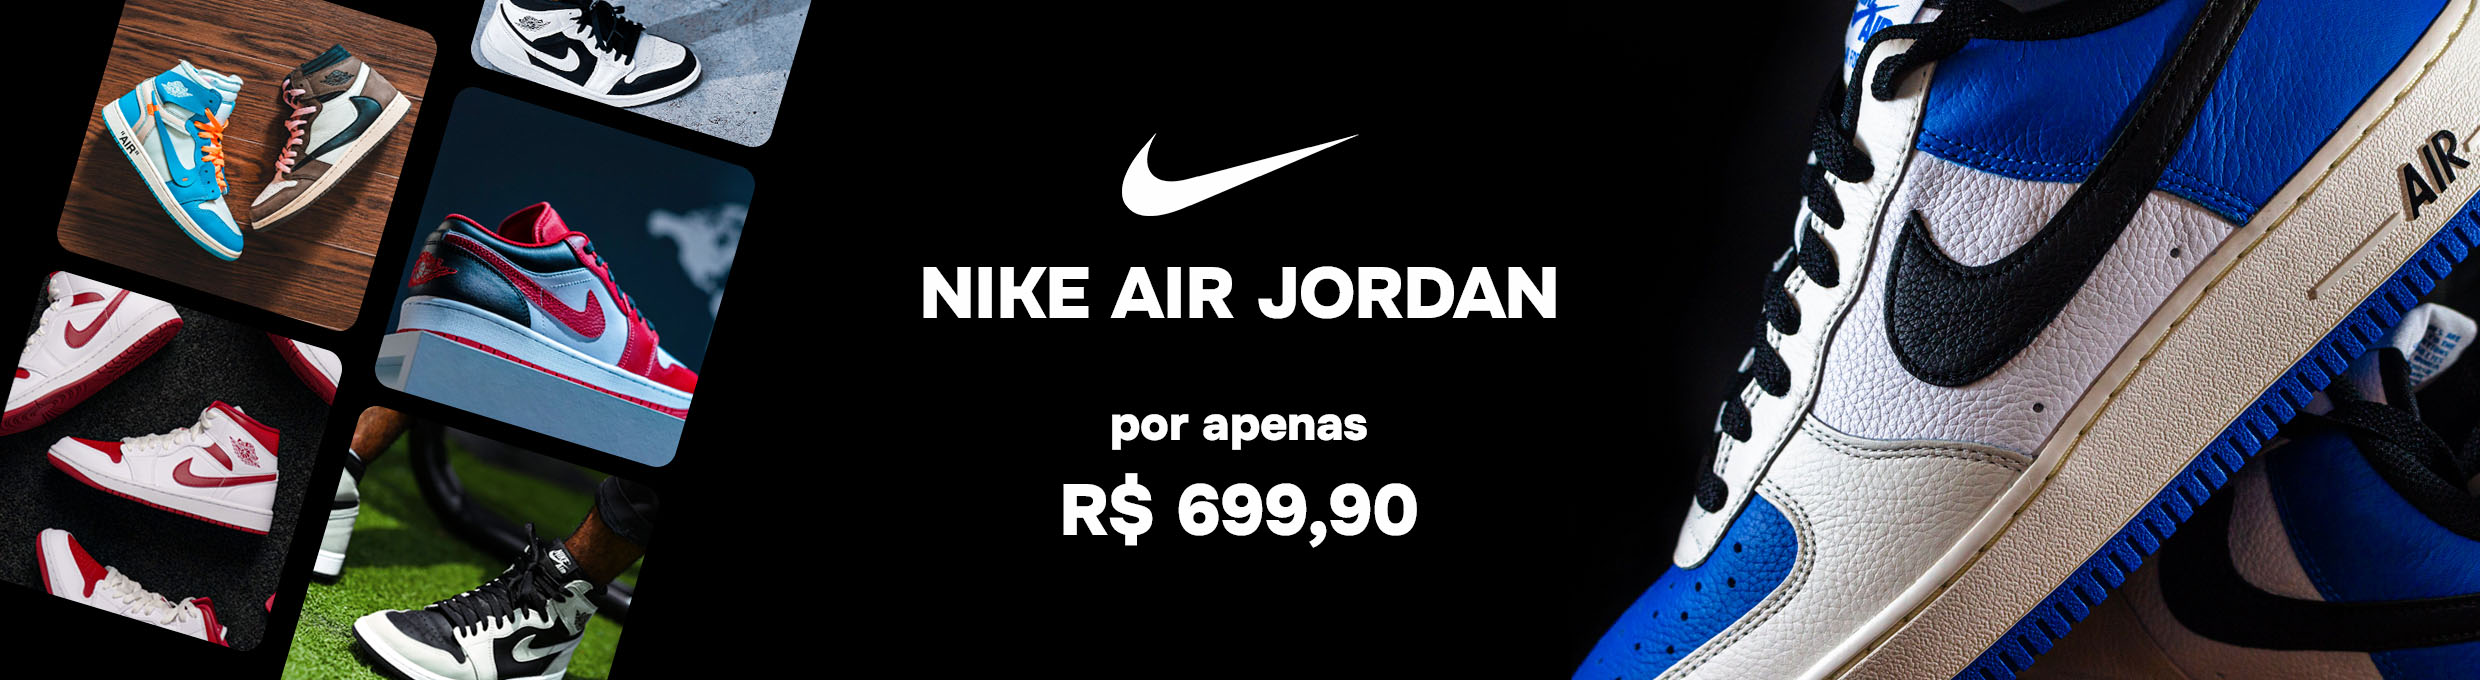 Tênis Nike Air Jordan em promoção